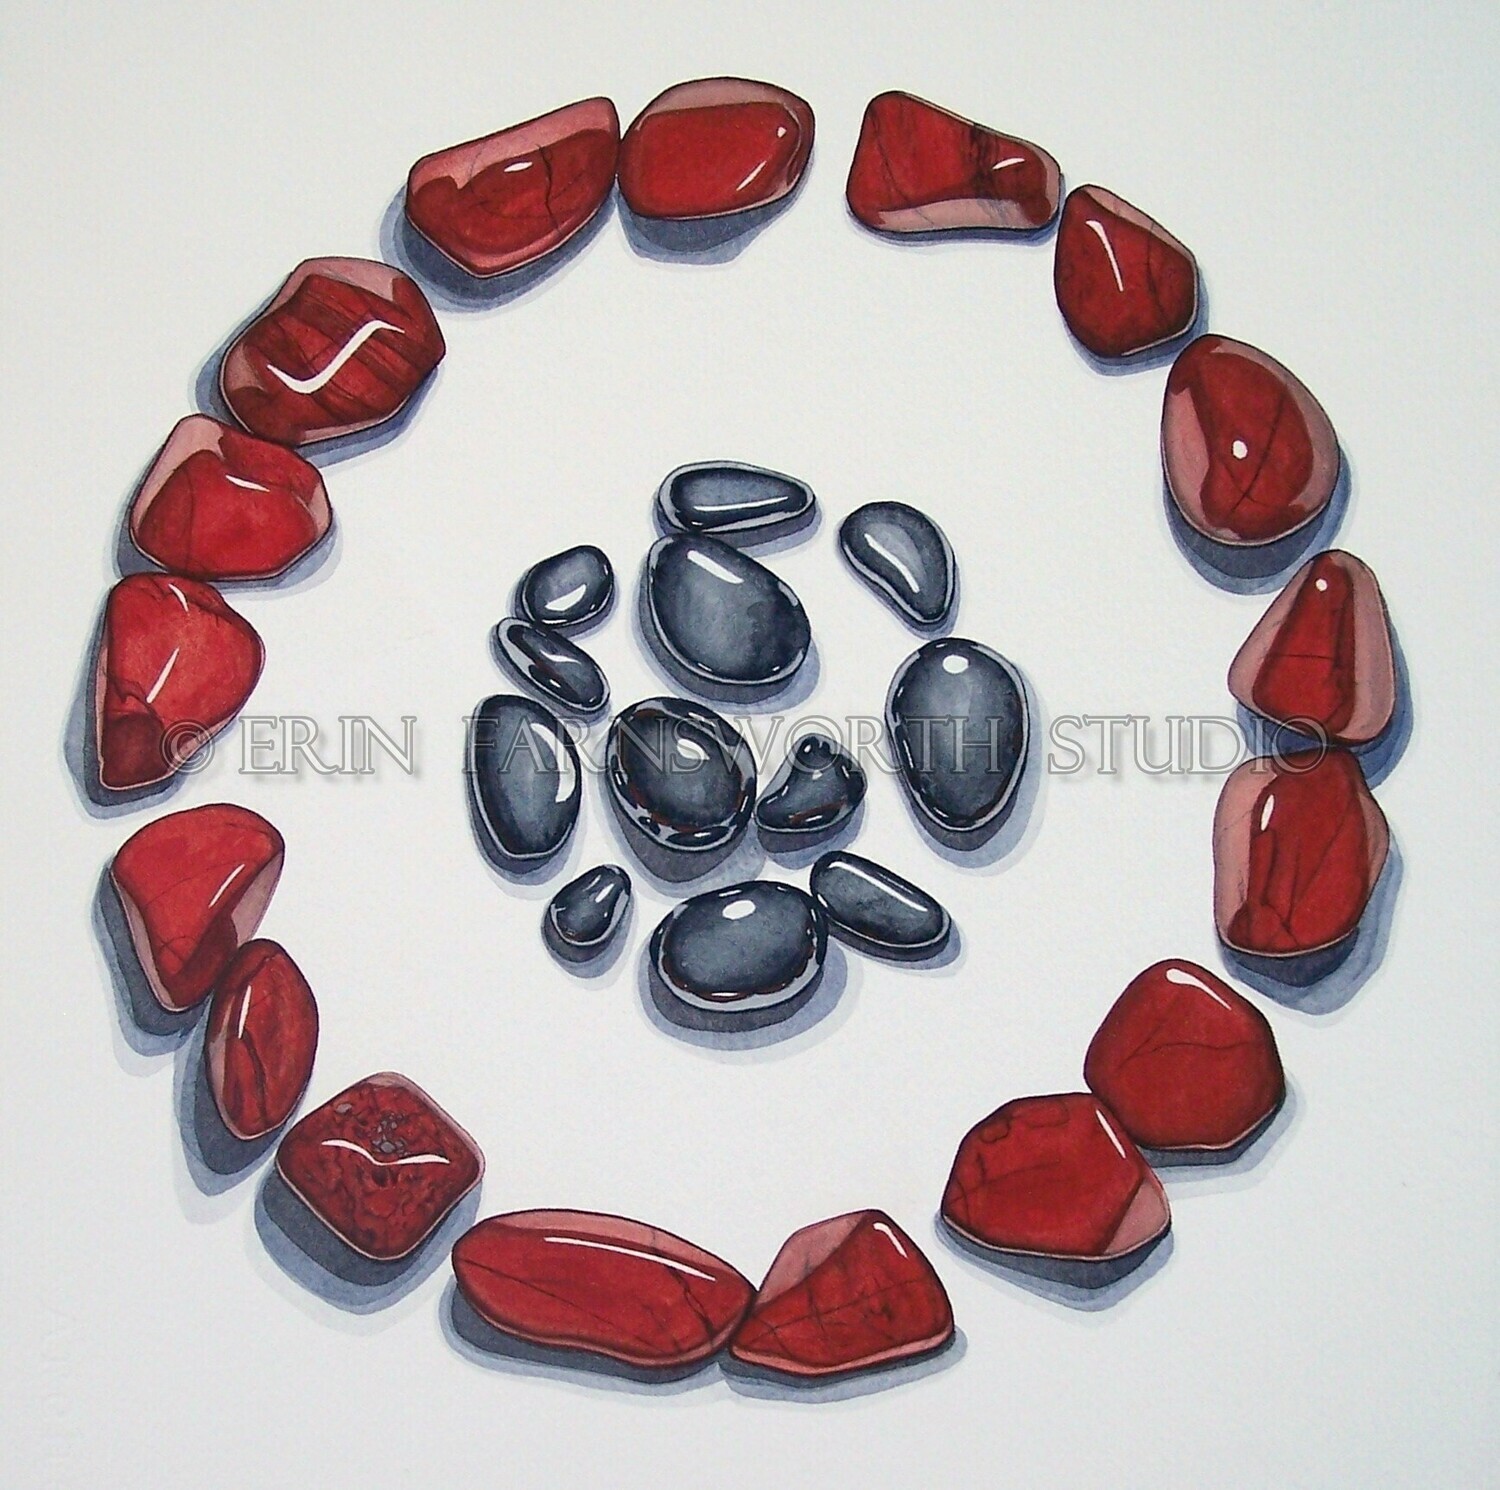 "Red Jasper and Hematite Circles" 8.5 x 11 print